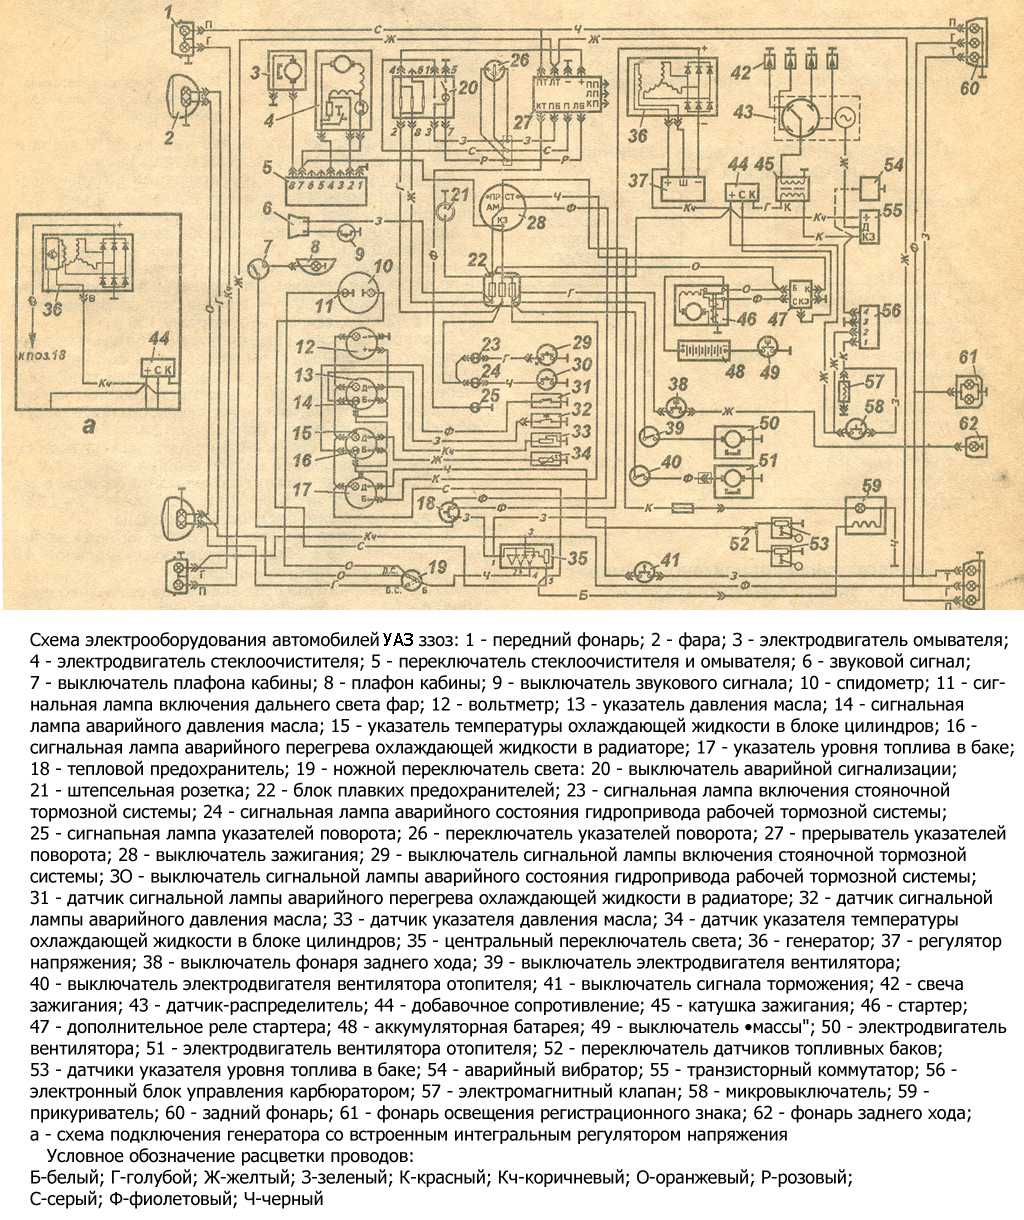 Схема электрооборудования автомобилей УАЗ–3303